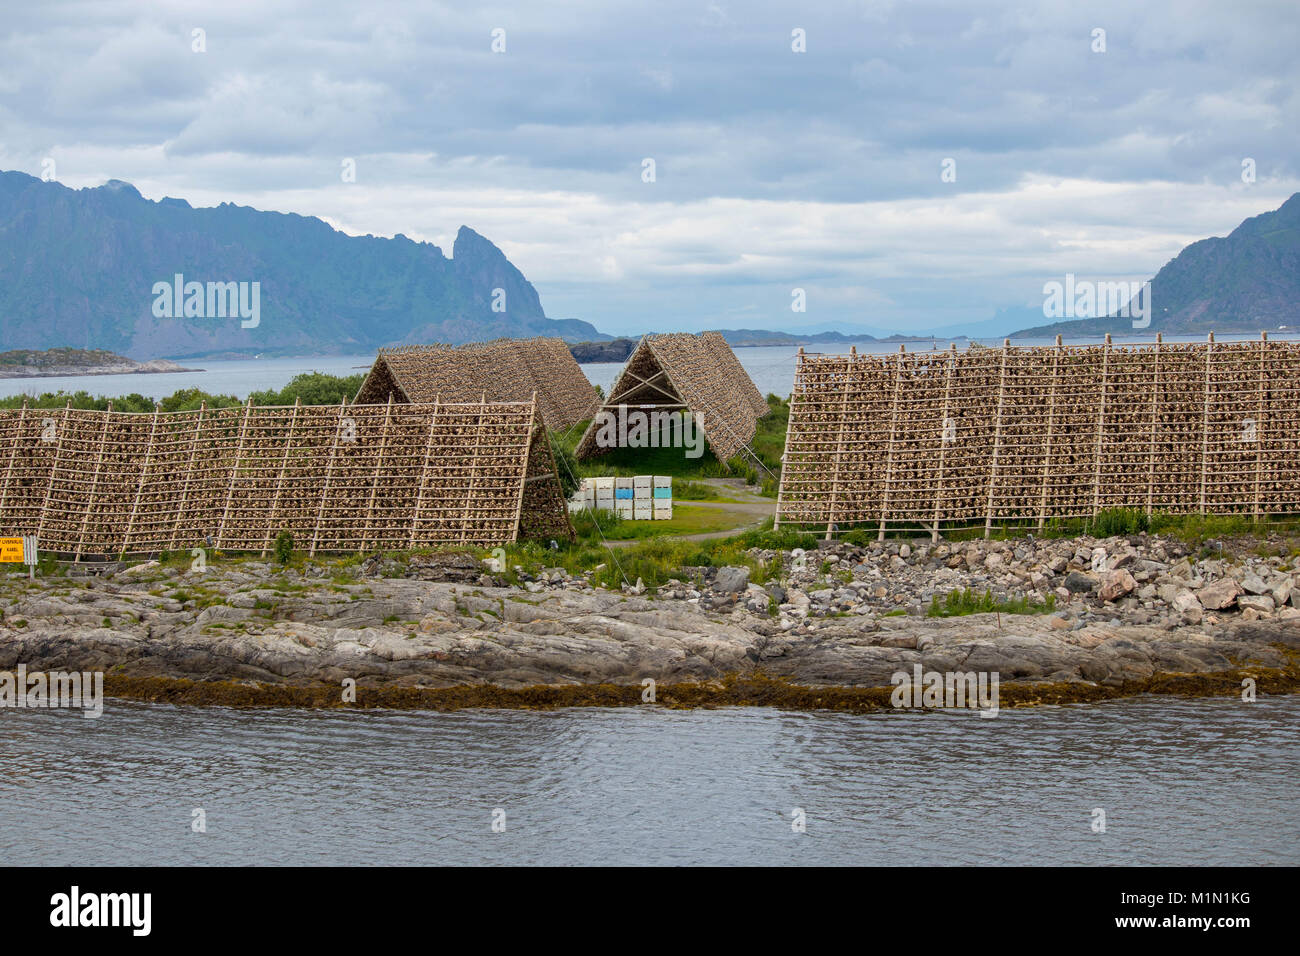 Rastrelliere per l'asciugatura di baccalà nella città di Svolvaer della contea del Nordland, Norvegia. Foto Stock